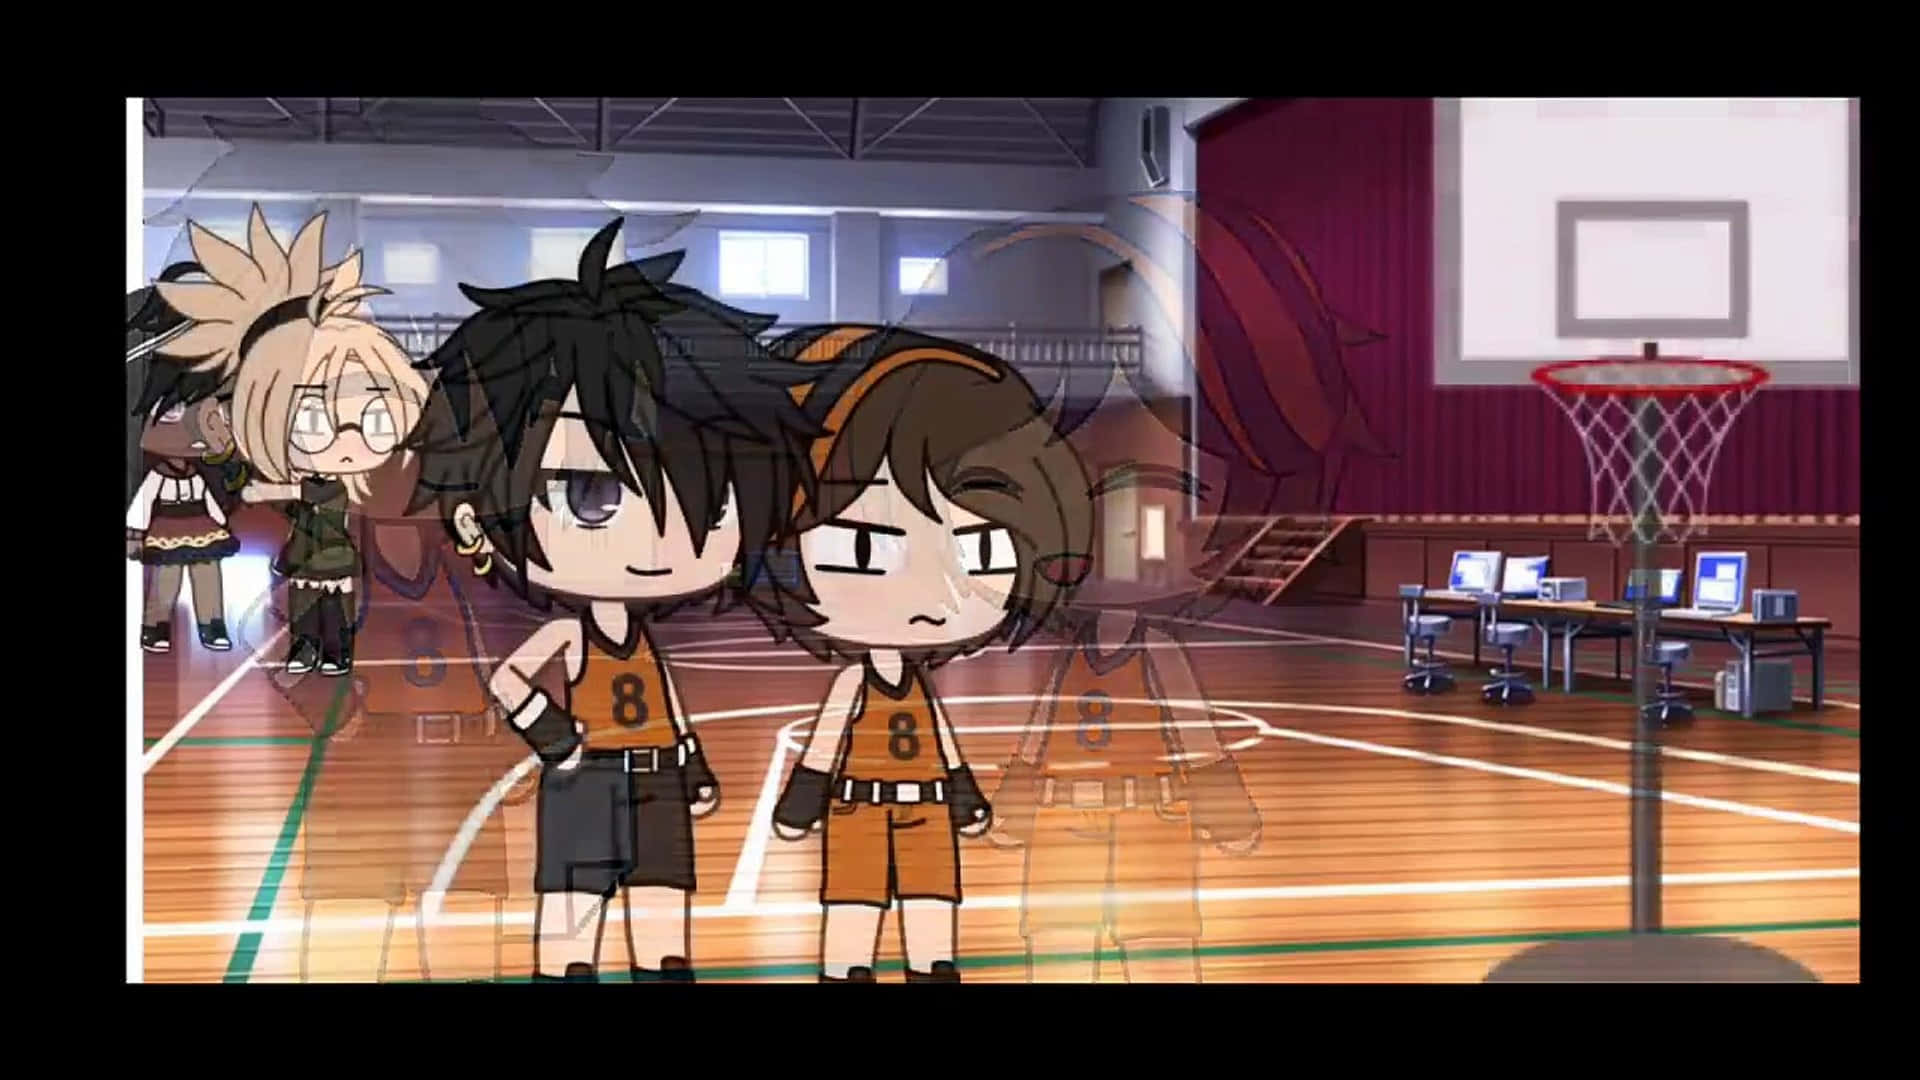 Engruppe Animekarakterer Står På En Basketbane.